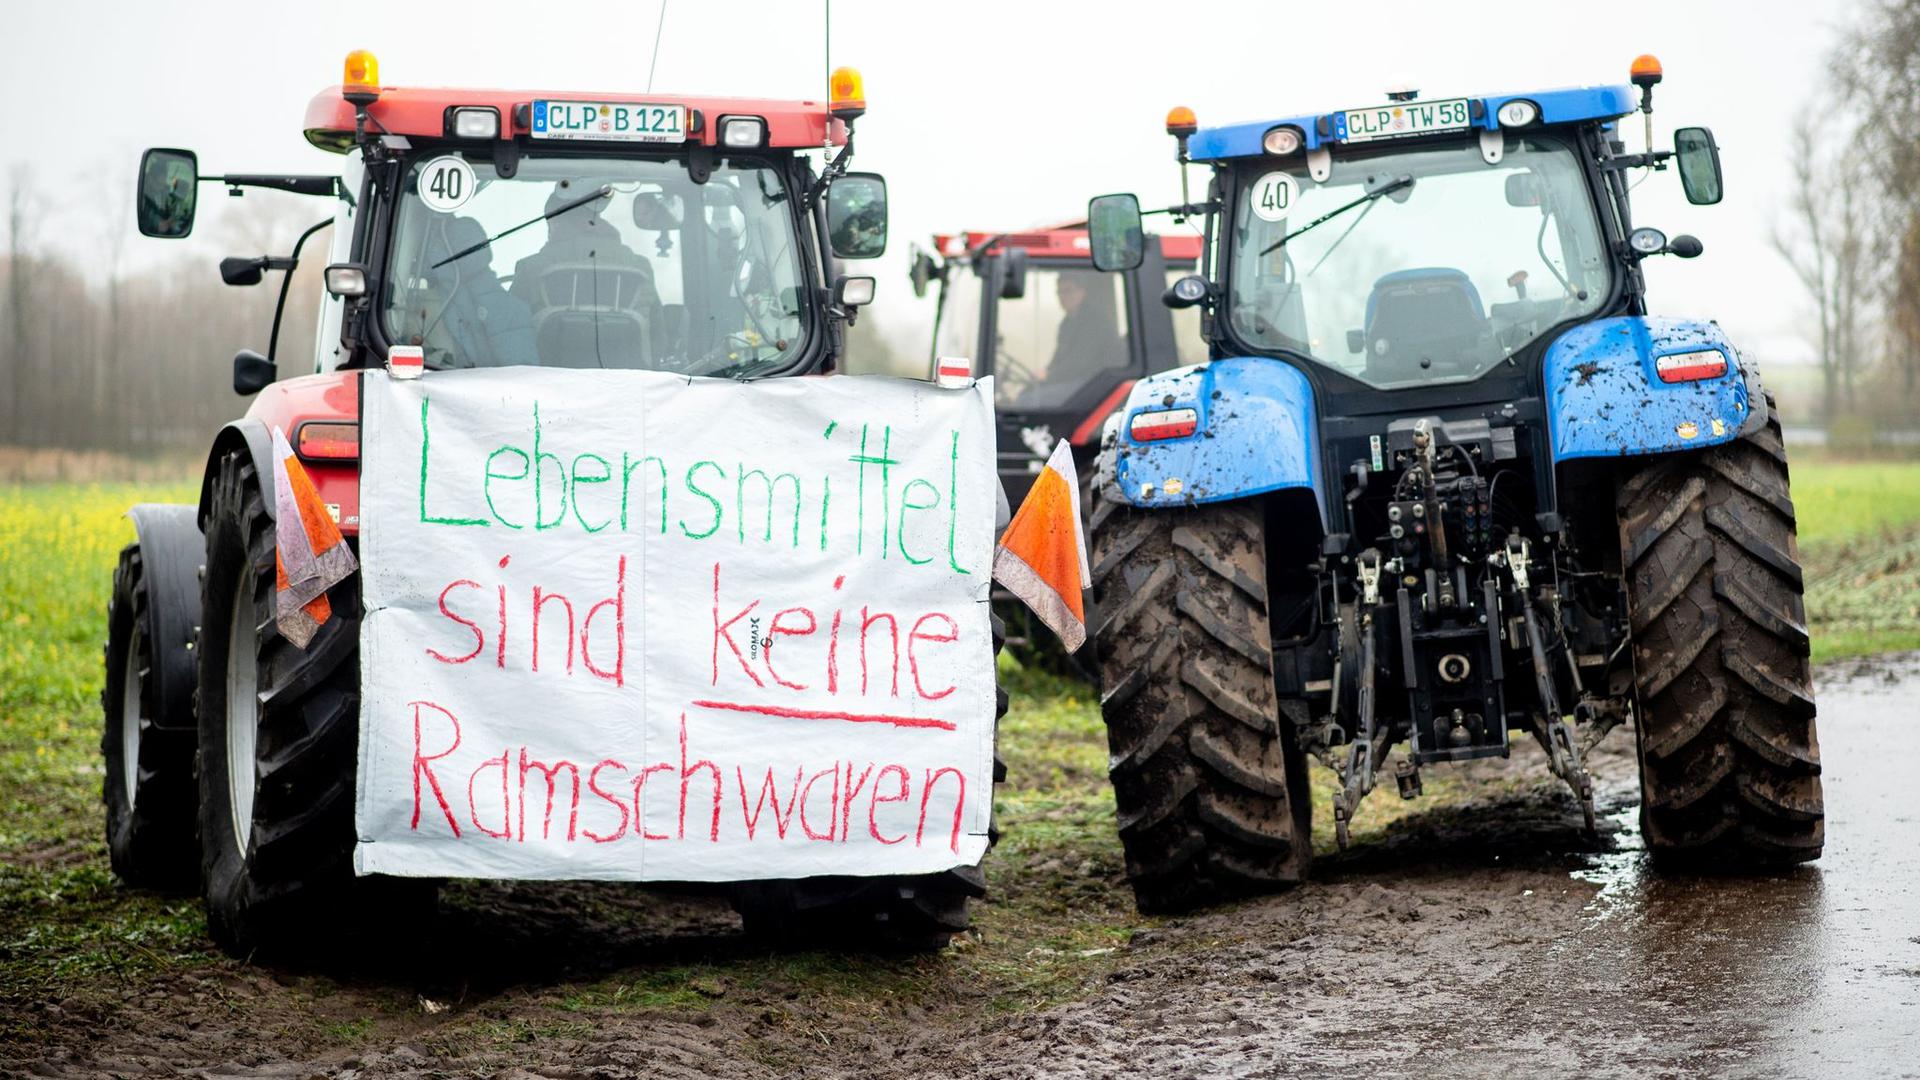 „Lebensmittel sind keine Ramschwaren“: Bauern-Protest vor dem Zentrallager von Lidl in Cloppenburg.